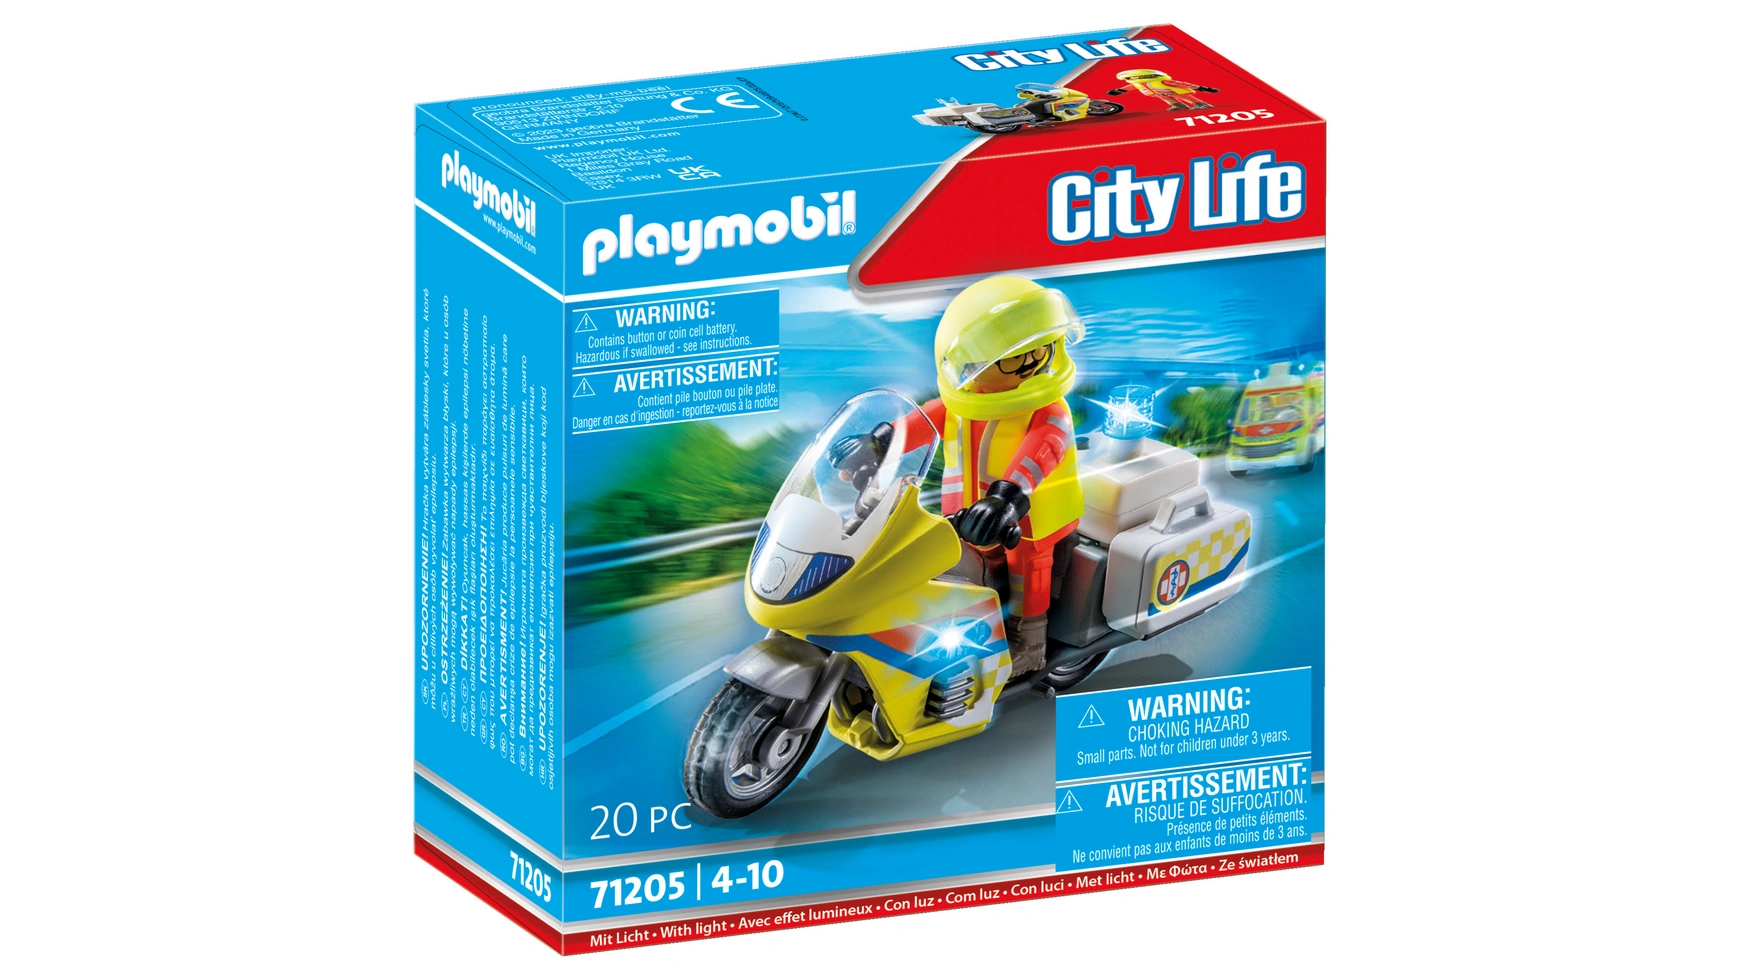 брелок с цветной печатью врач скорой помощи City life мотоцикл врача скорой помощи с мигалкой Playmobil